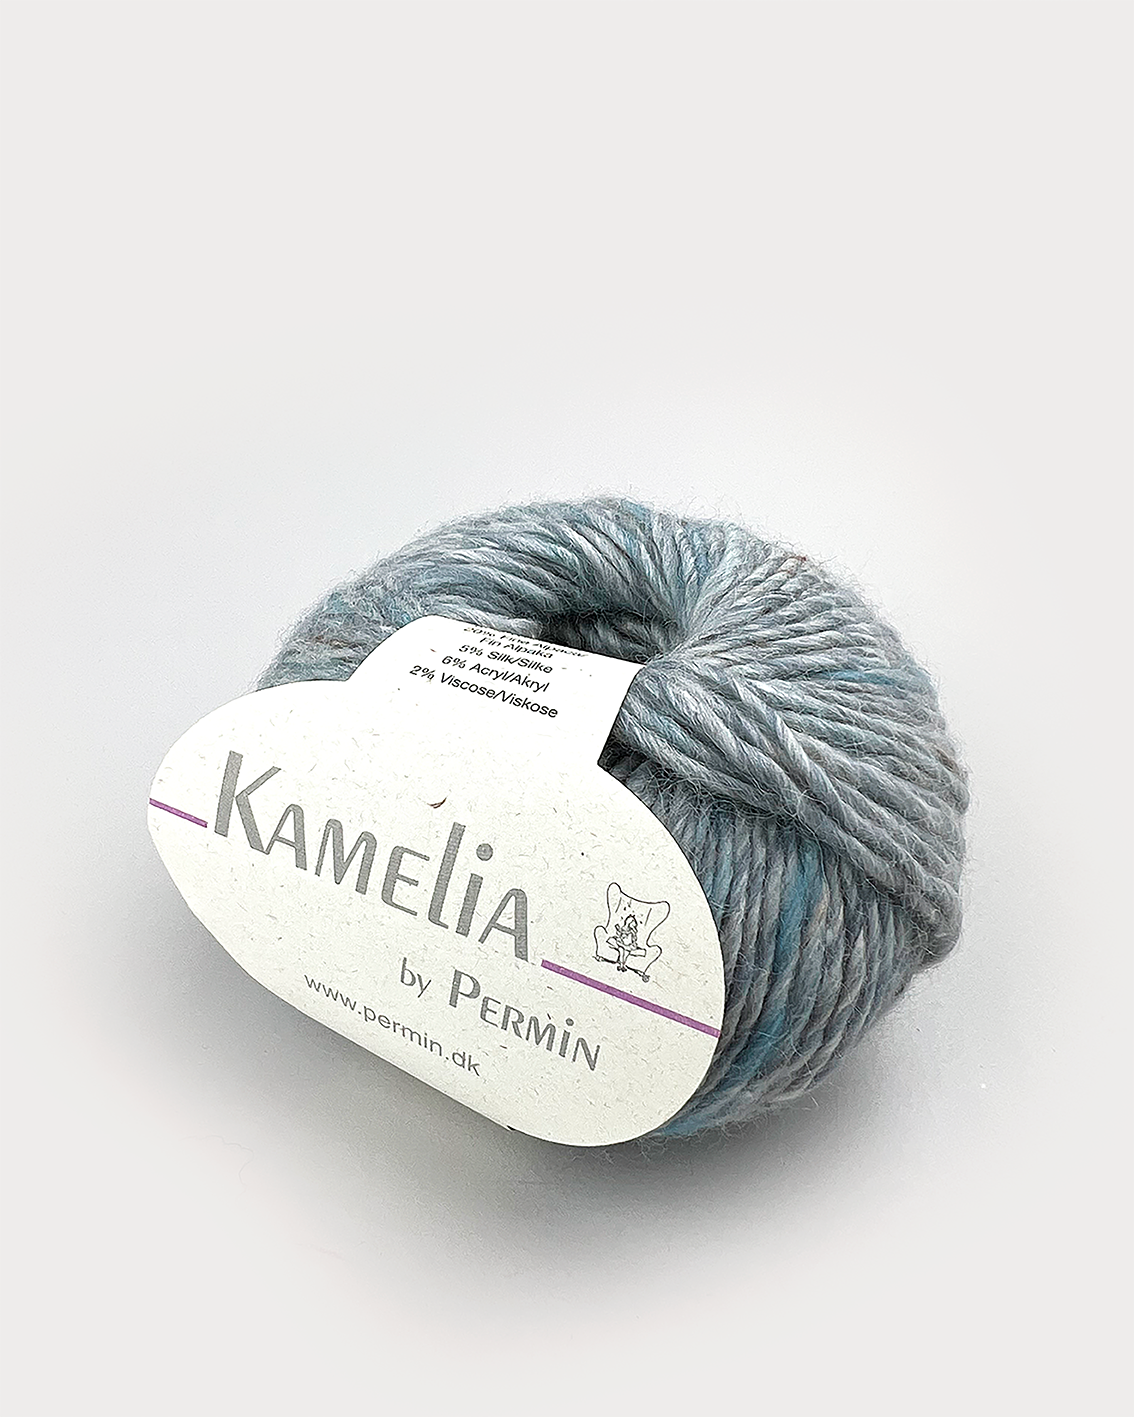 Kamelia by Permin